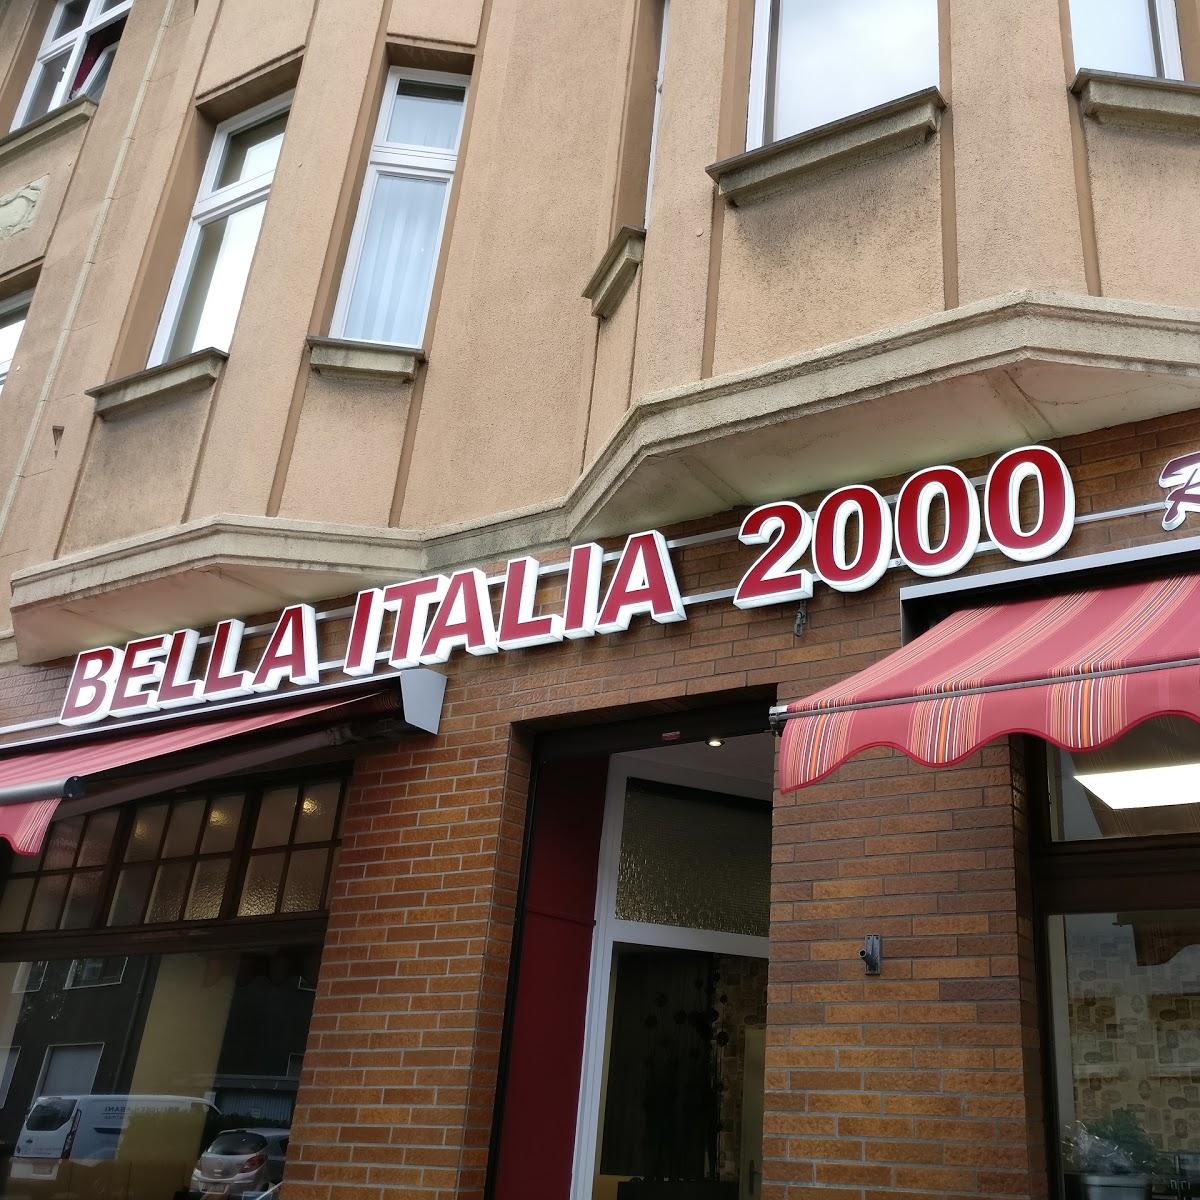 Restaurant "Pizzeria Bella Italia 2000" in Essen